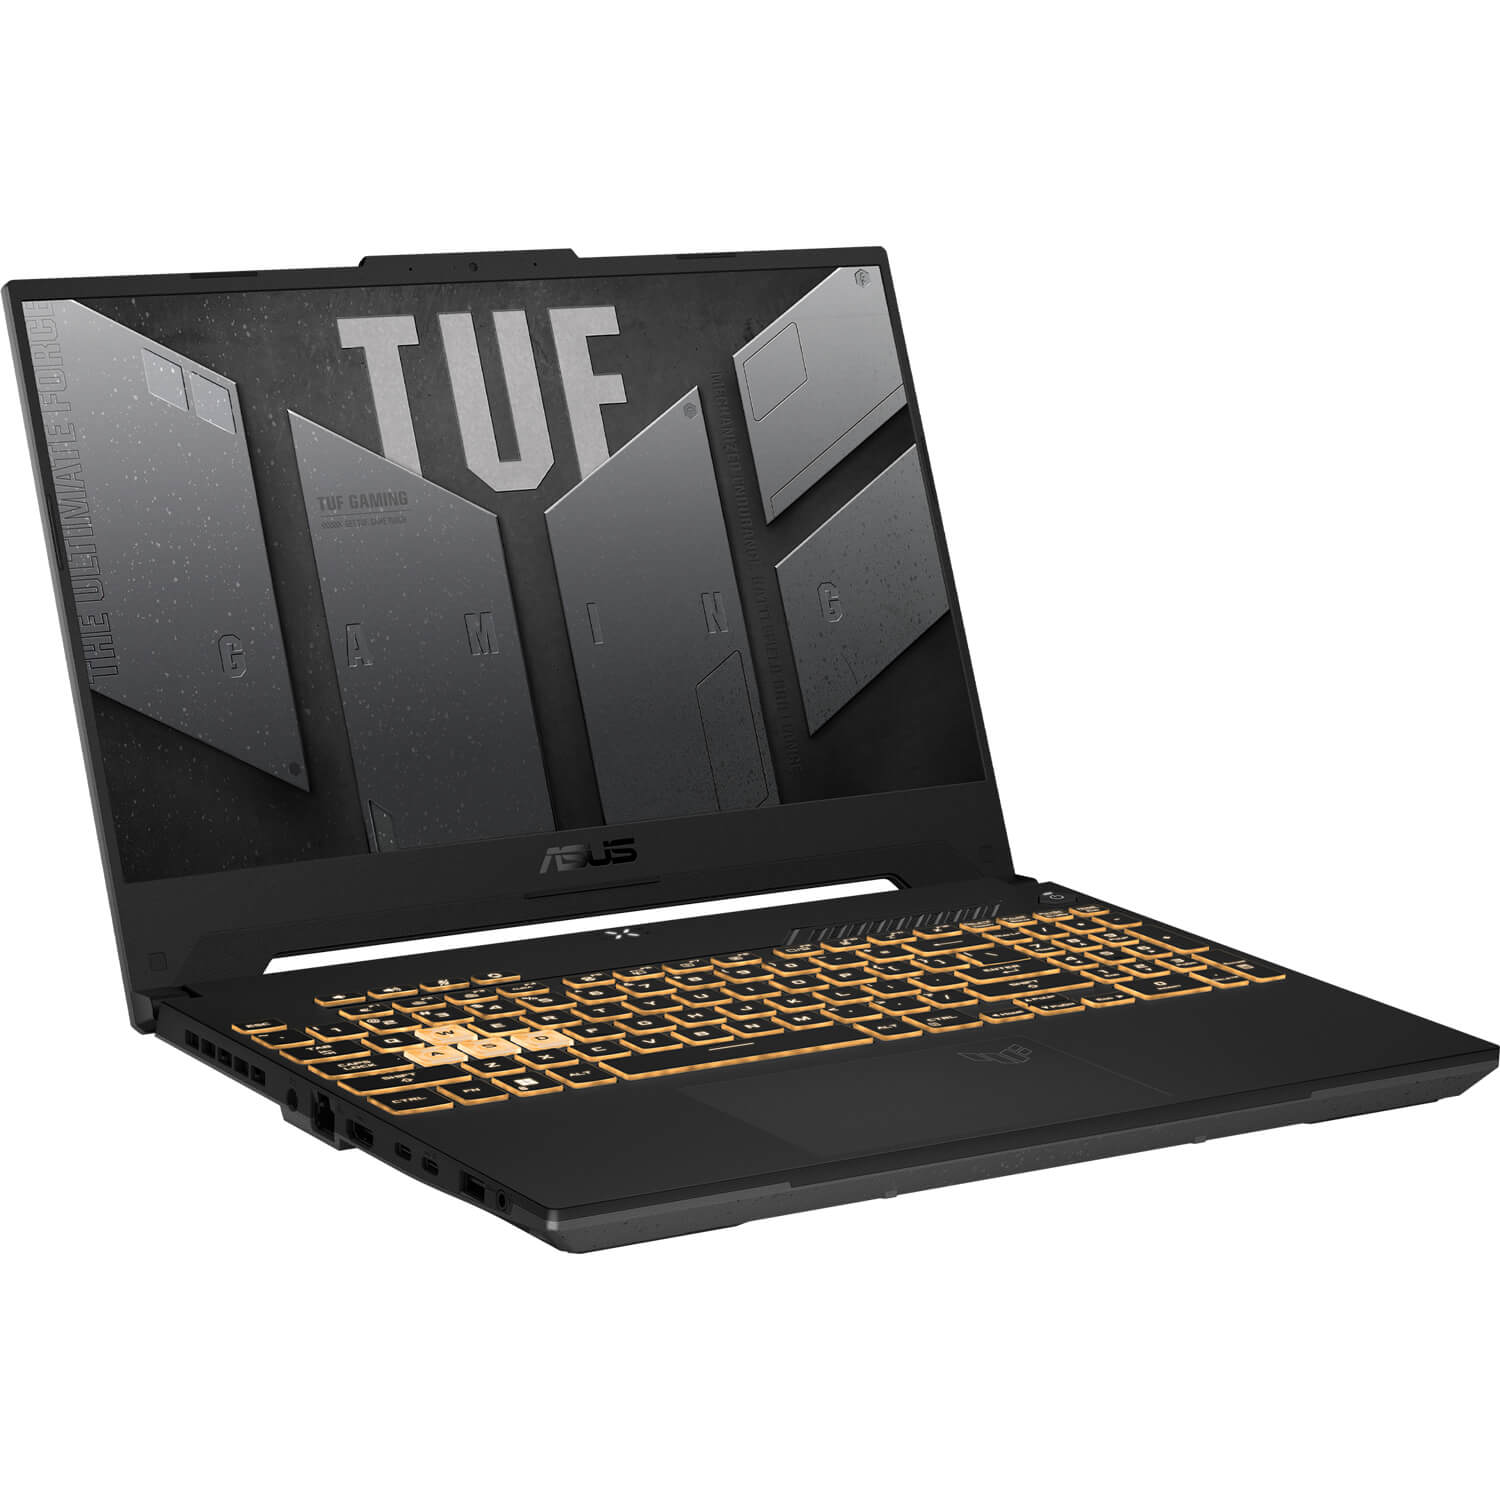 لپ تاپ گیمینگ ایسوس TUF Gaming F15 FX507VV-LP229